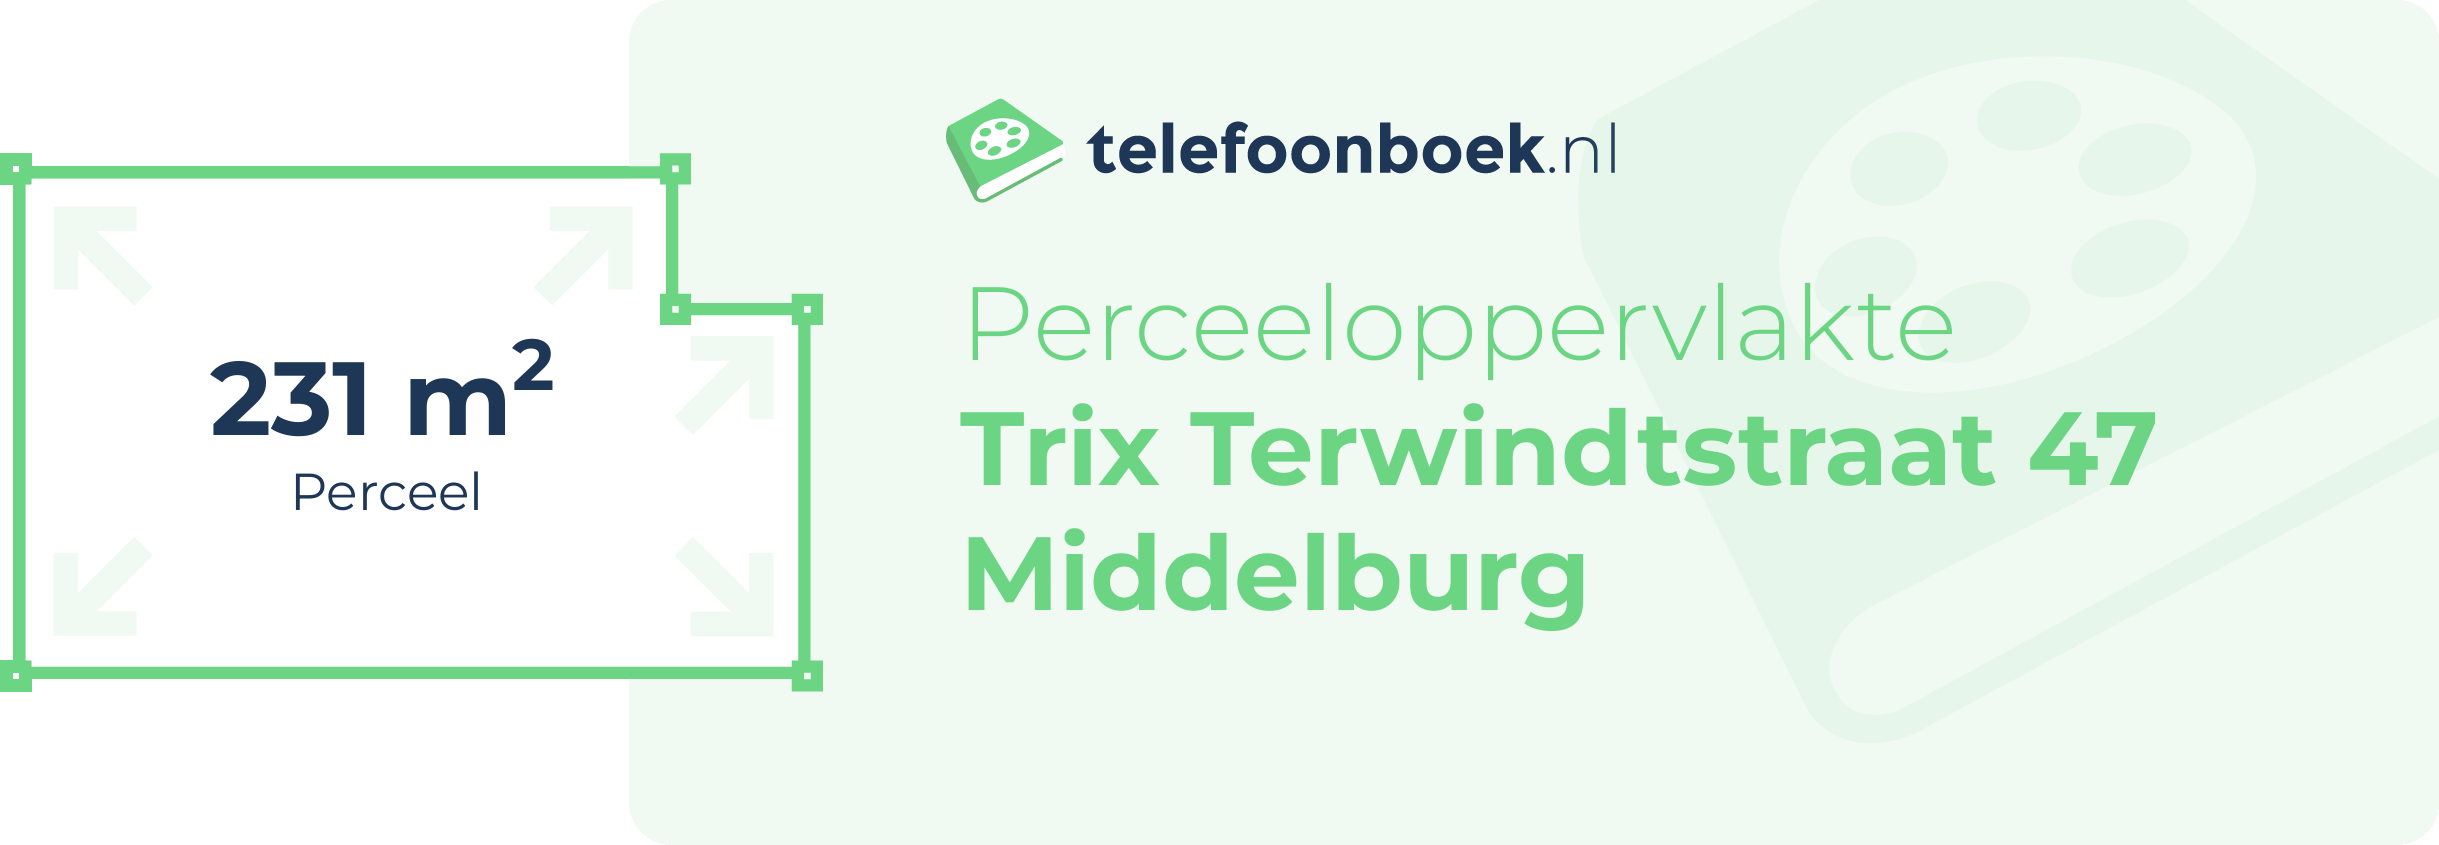 Perceeloppervlakte Trix Terwindtstraat 47 Middelburg